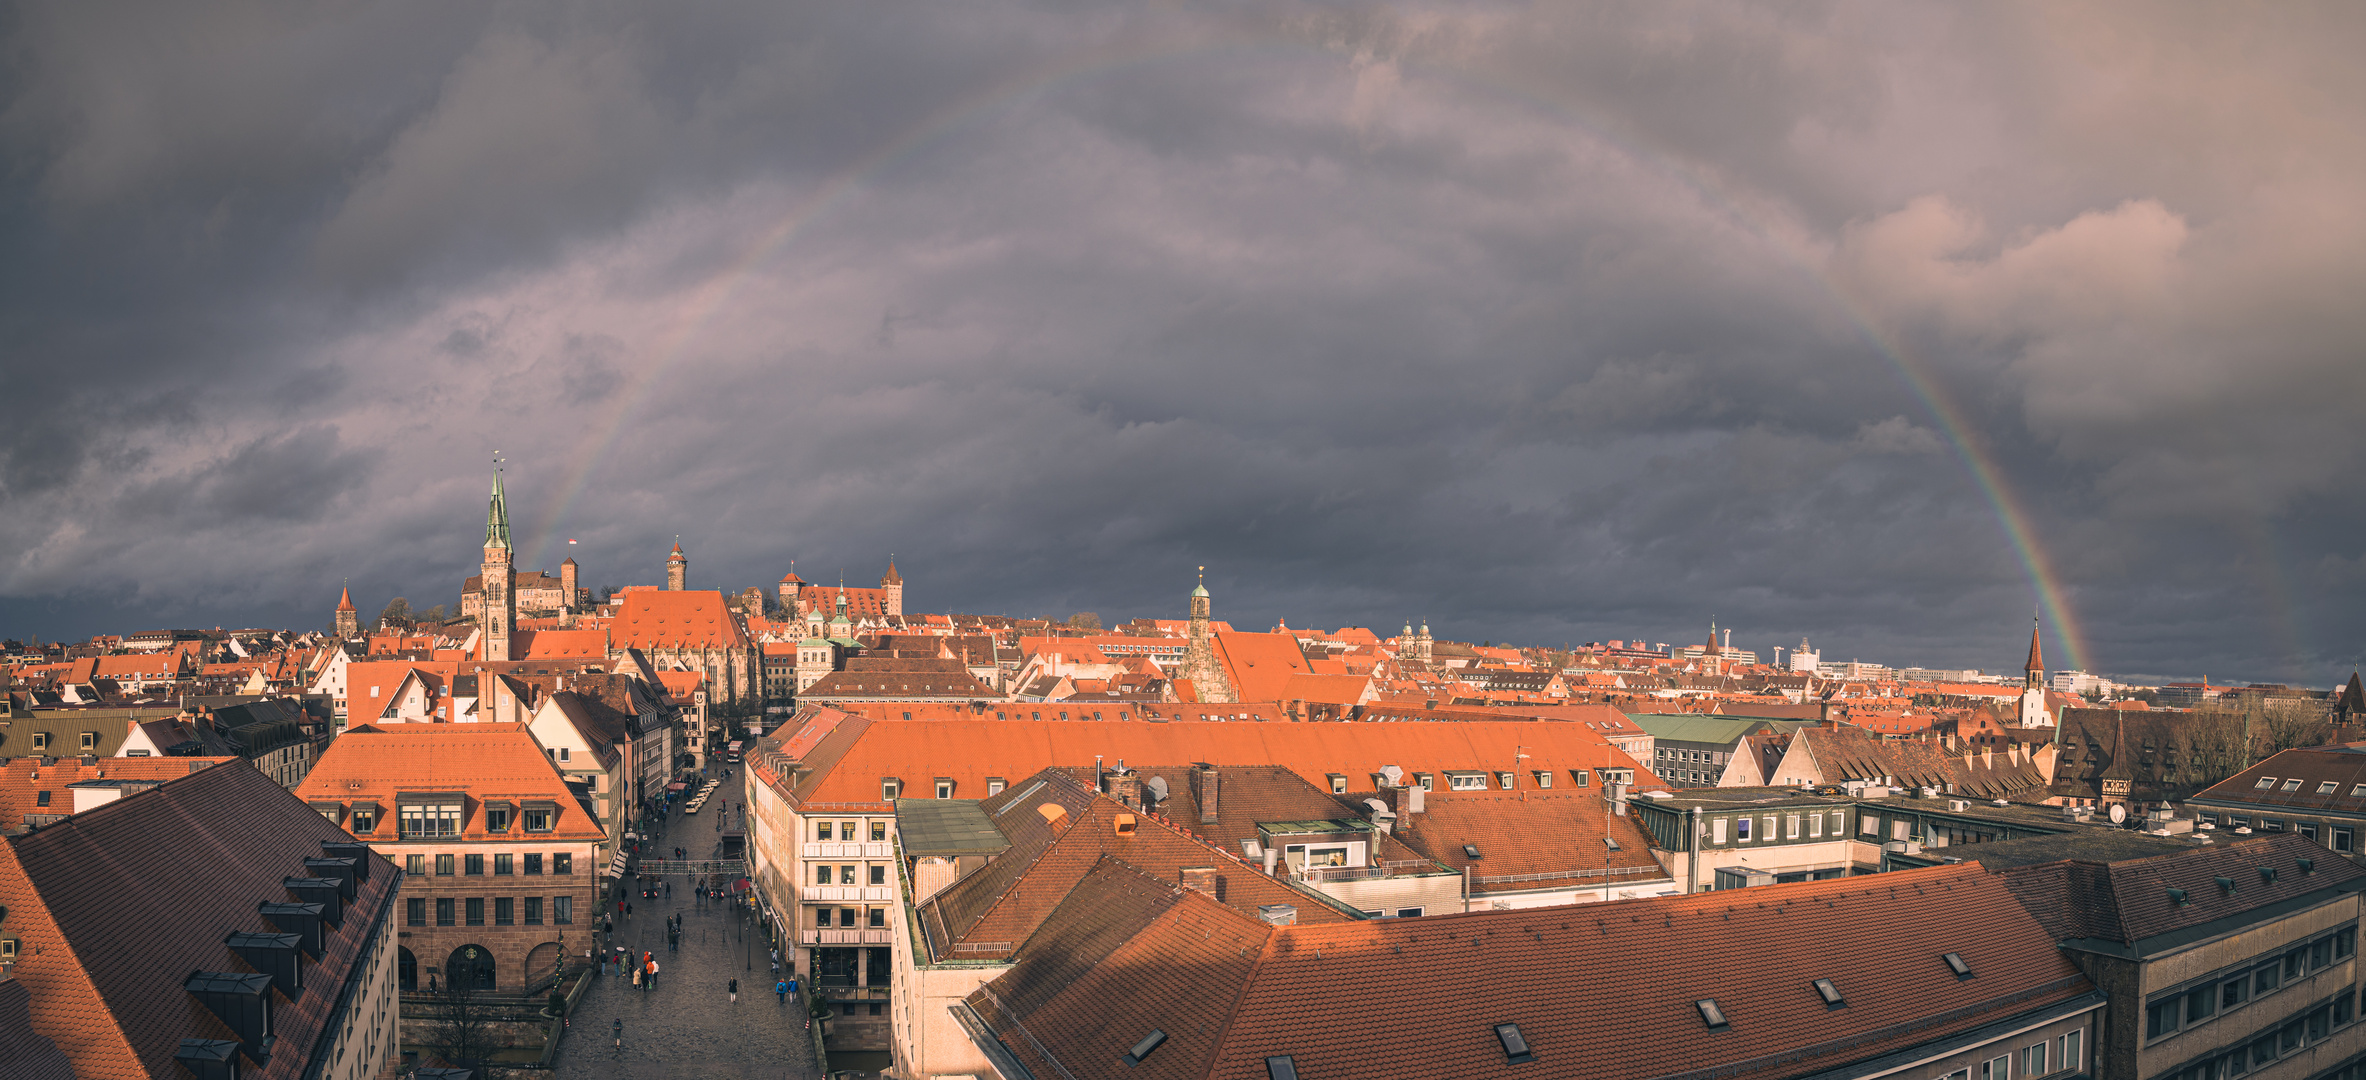 Nürnberg - over the rainbow